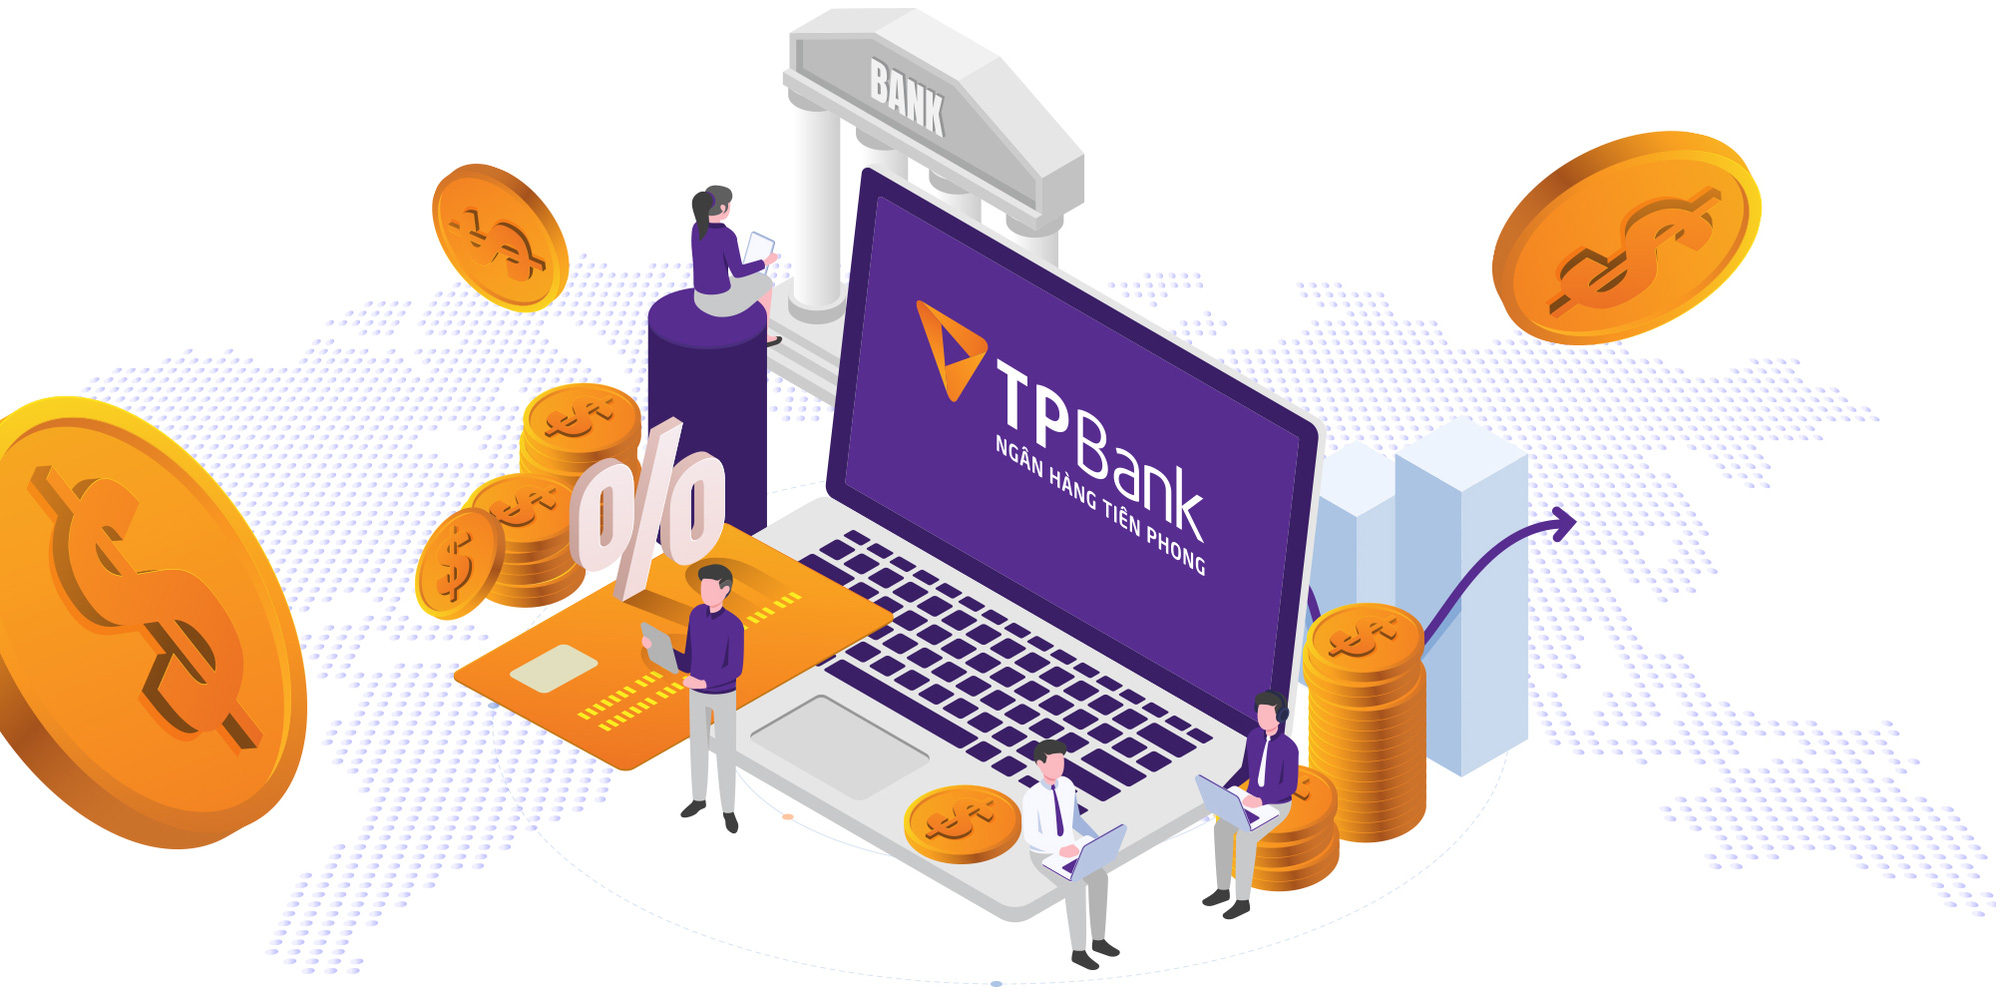 Tạo phong cách sống bằng dịch vụ ngân hàng” dịch vụ tương lai hiện hữu tại TPBank - Ảnh 2.